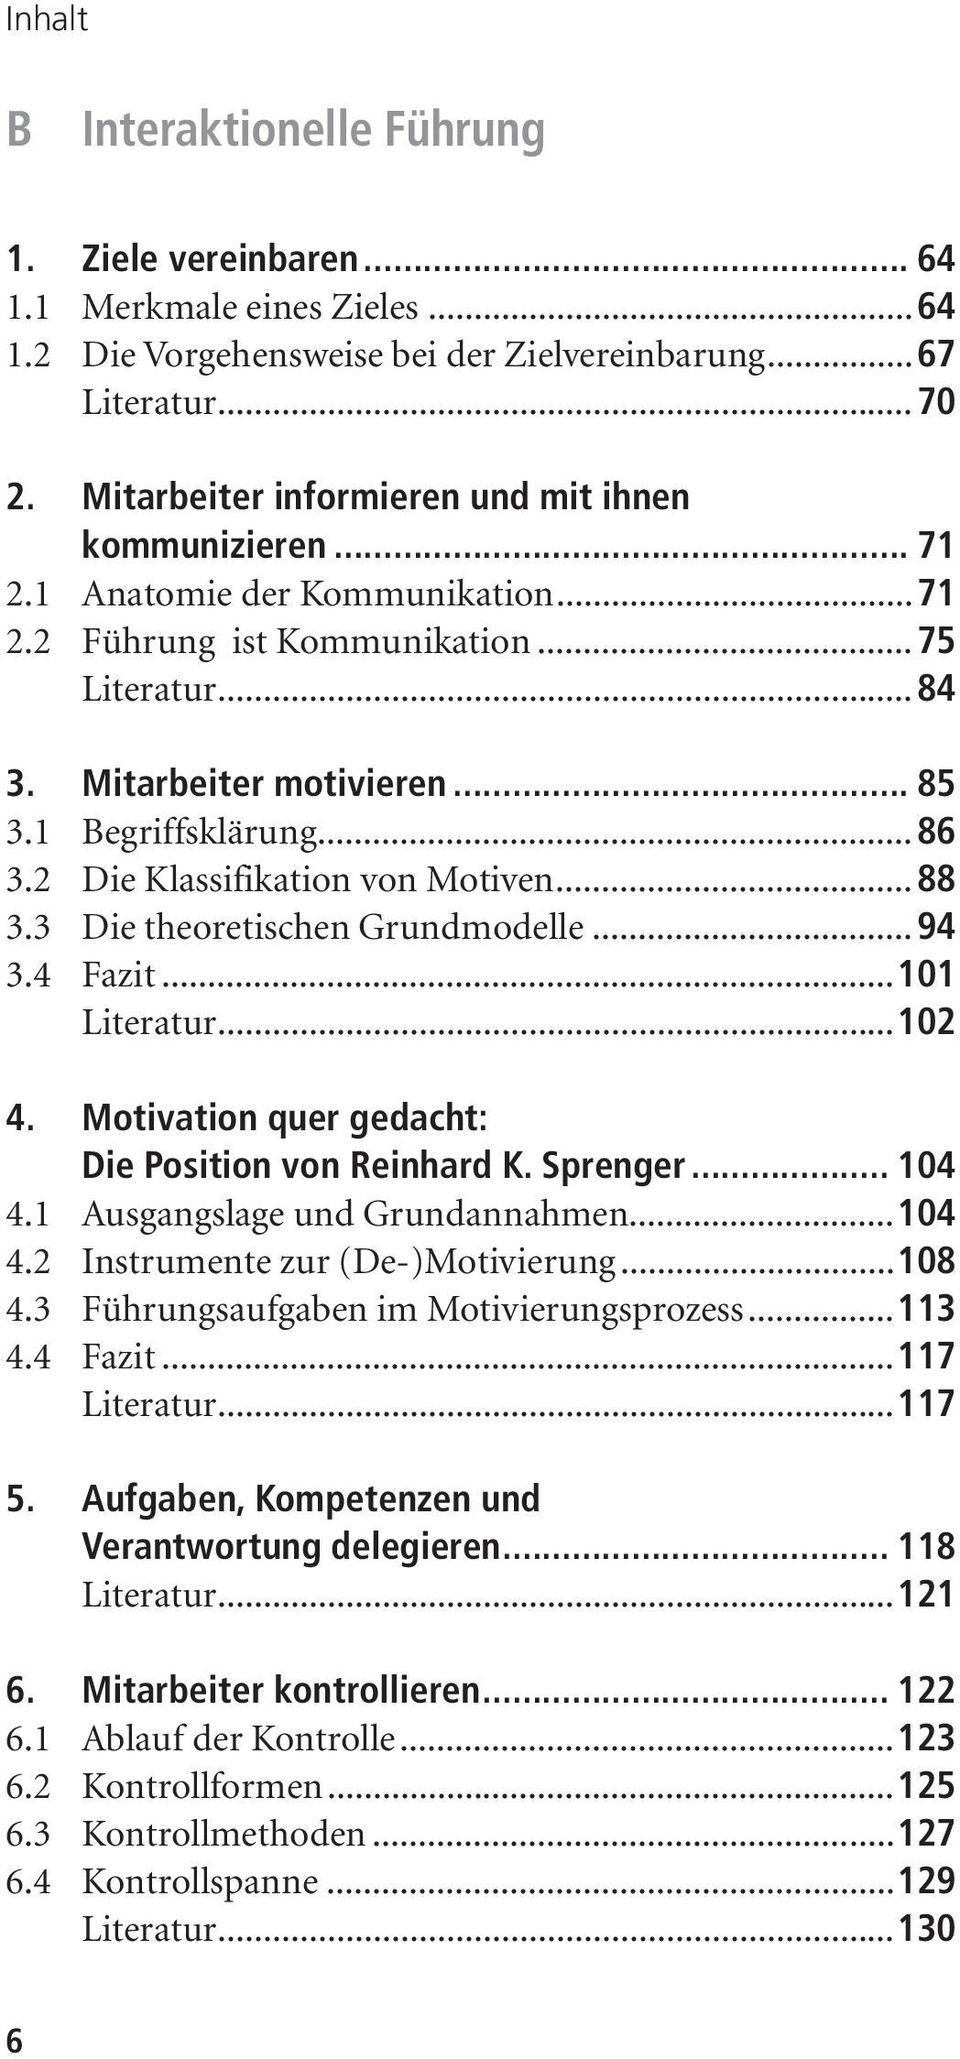 ..86 3.2 Die Klassifikation von Motiven...88 3.3 Die theoretischen Grundmodelle...94 3.4 Fazit...101 Literatur...102 4. Motivation quer gedacht: Die Position von Reinhard K. Sprenger... 104 4.